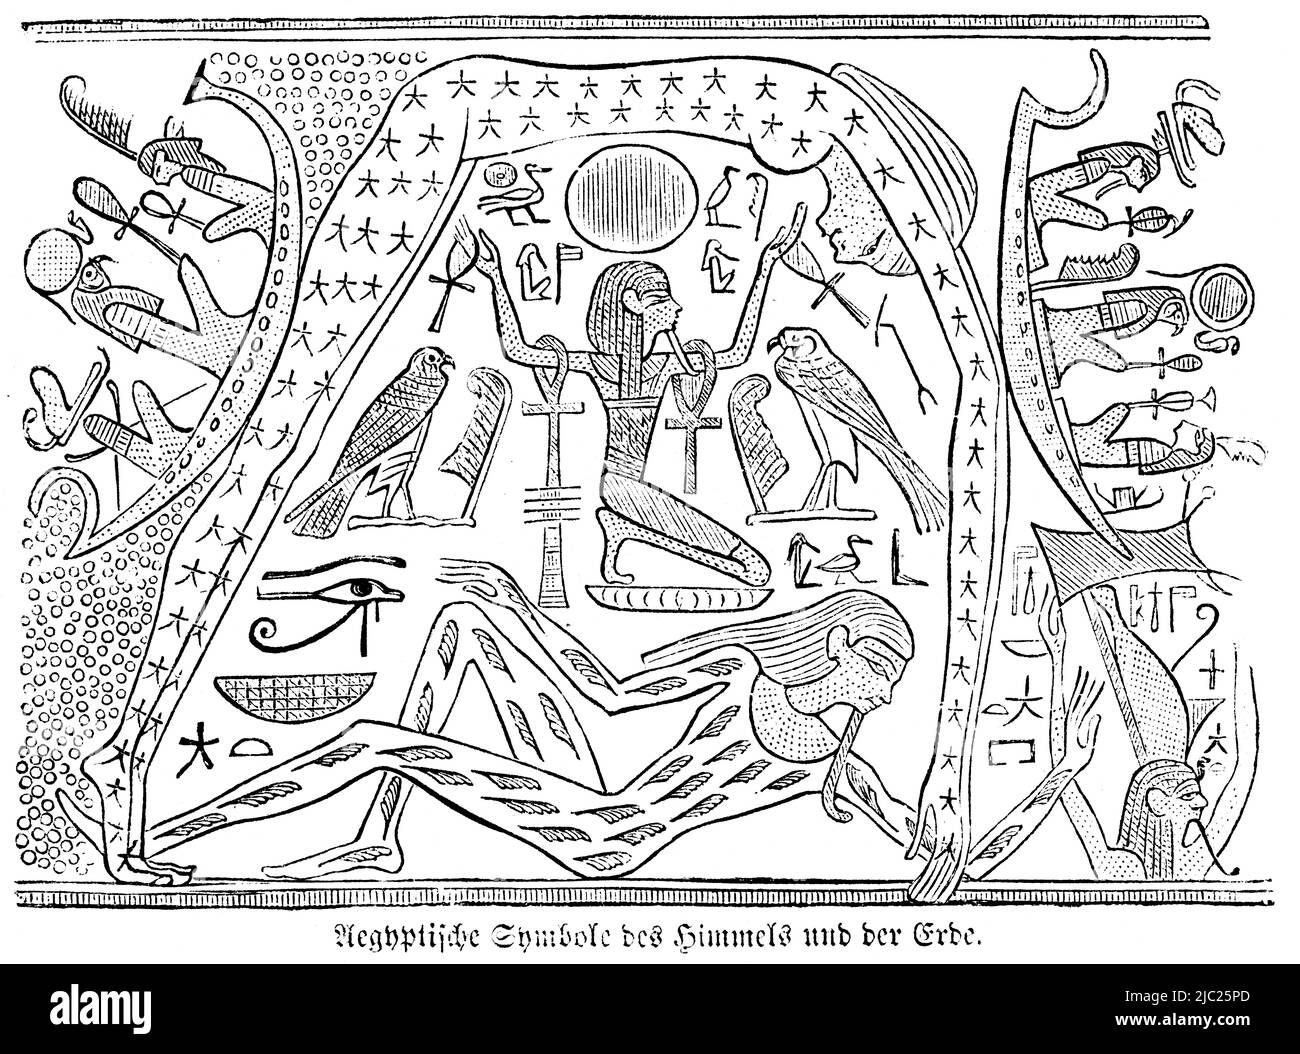 Symboles égyptiens du ciel et de la terre, Bible, ancien Testament, Premier Livre de Moïse, Genèse, illustration historique 1850 Banque D'Images